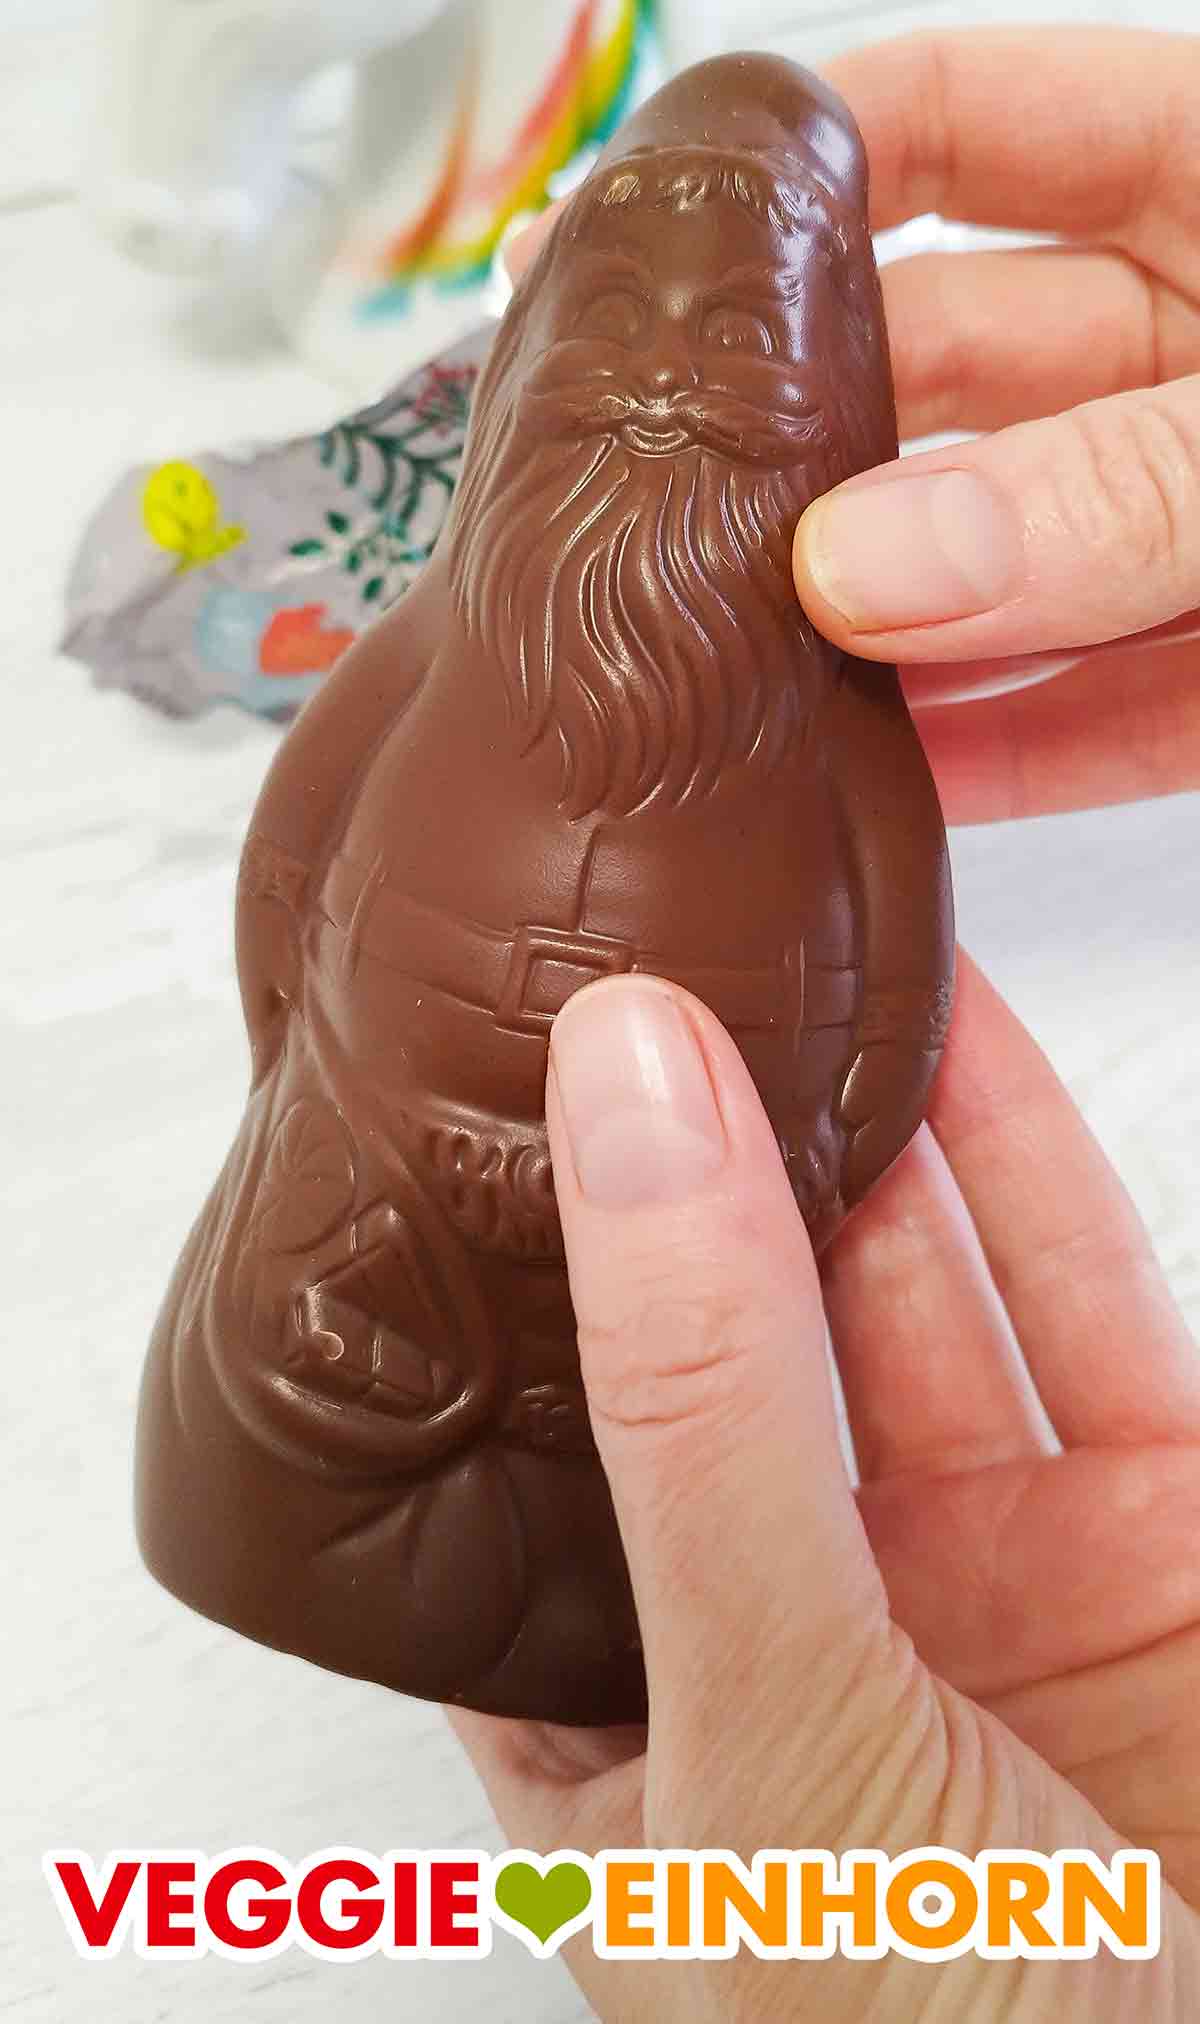 Riegelein Nikolaus aus veganer Schokolade